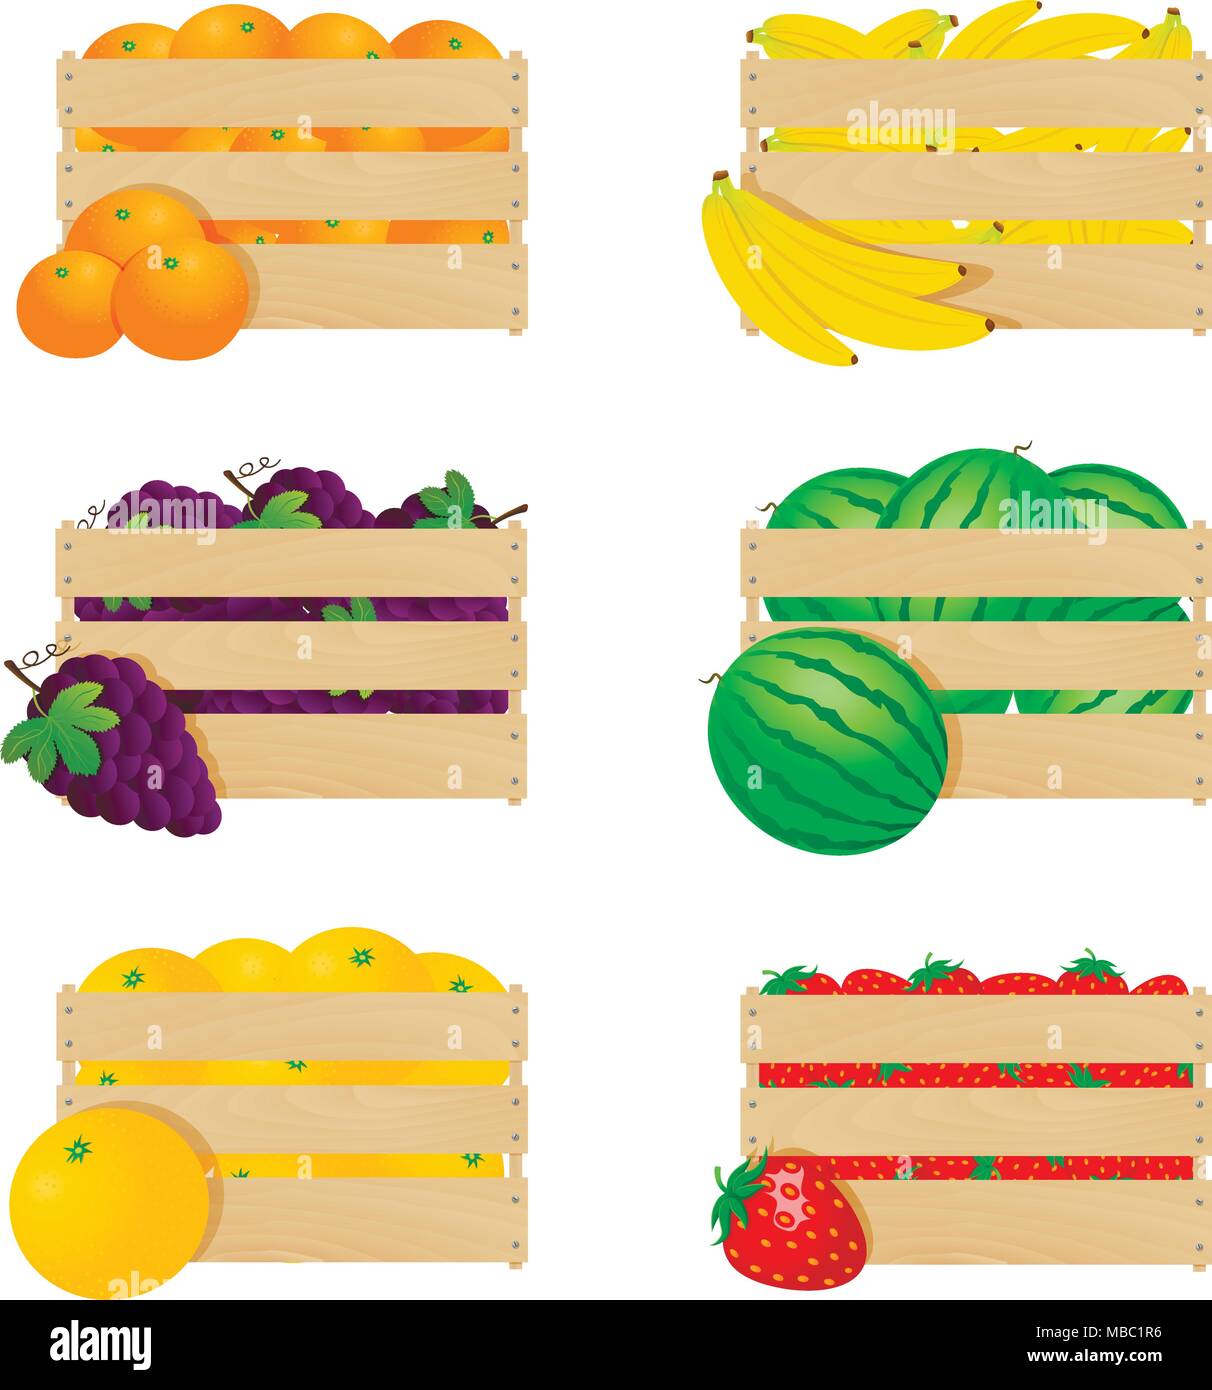 Holzkisten mit frischen Früchten auf einem weißen Hintergrund. Vector Illustration. Stock Vektor